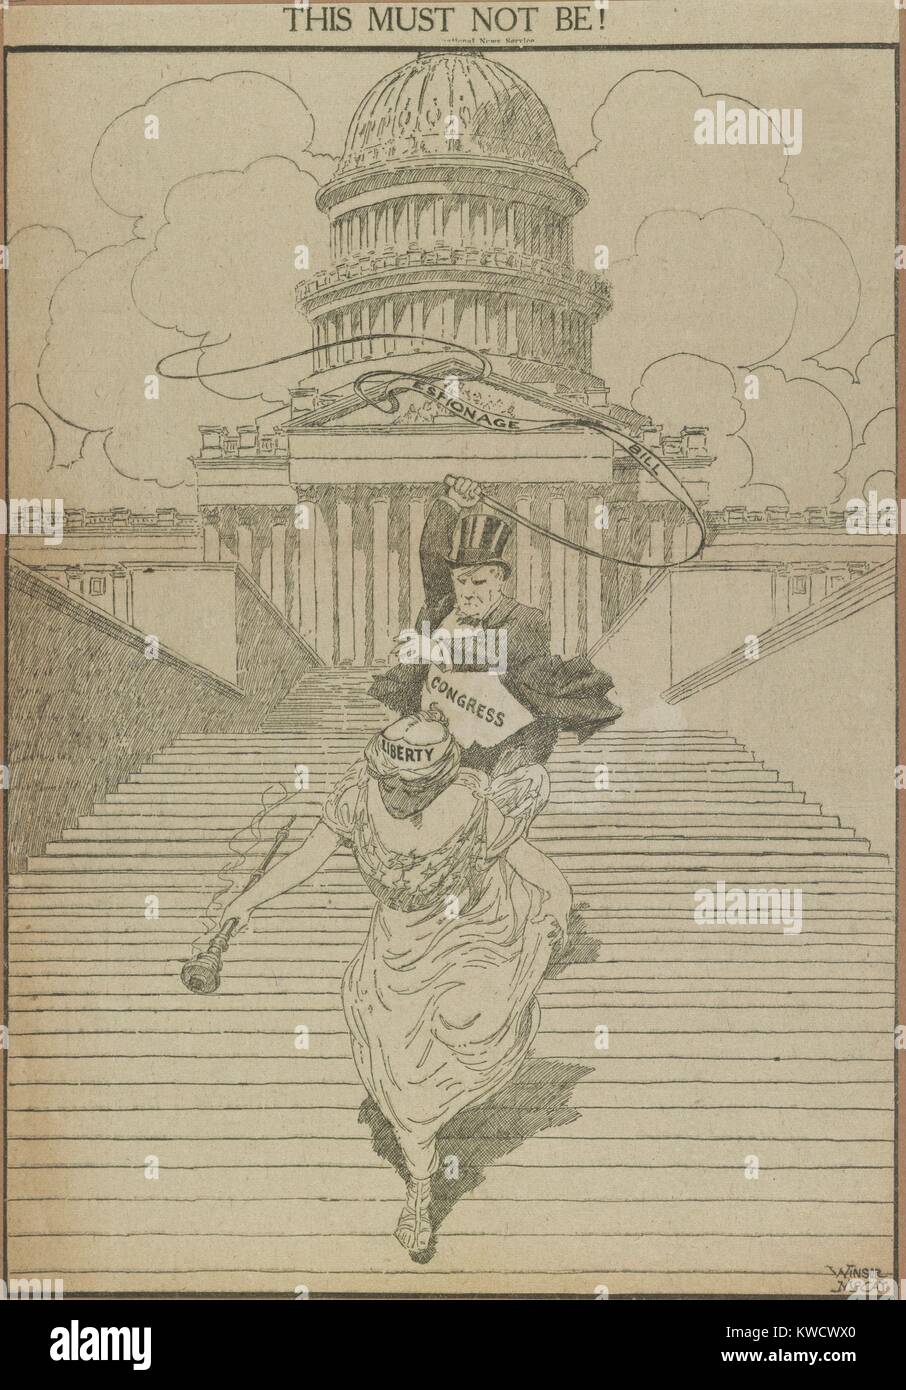 Das muss nicht sein! Weltkrieg 1 amerikanische politische Karikatur gegen die Spionage Rechnung. Freiheit steigt die Schritte des U.S. Capitol von Kongress jagten mit einer Peitsche beschriftet Spionage Rechnung. Karikatur von Winsor McCay, Mai 2, 1917 (BSLOC 2017 1 42) Stockfoto